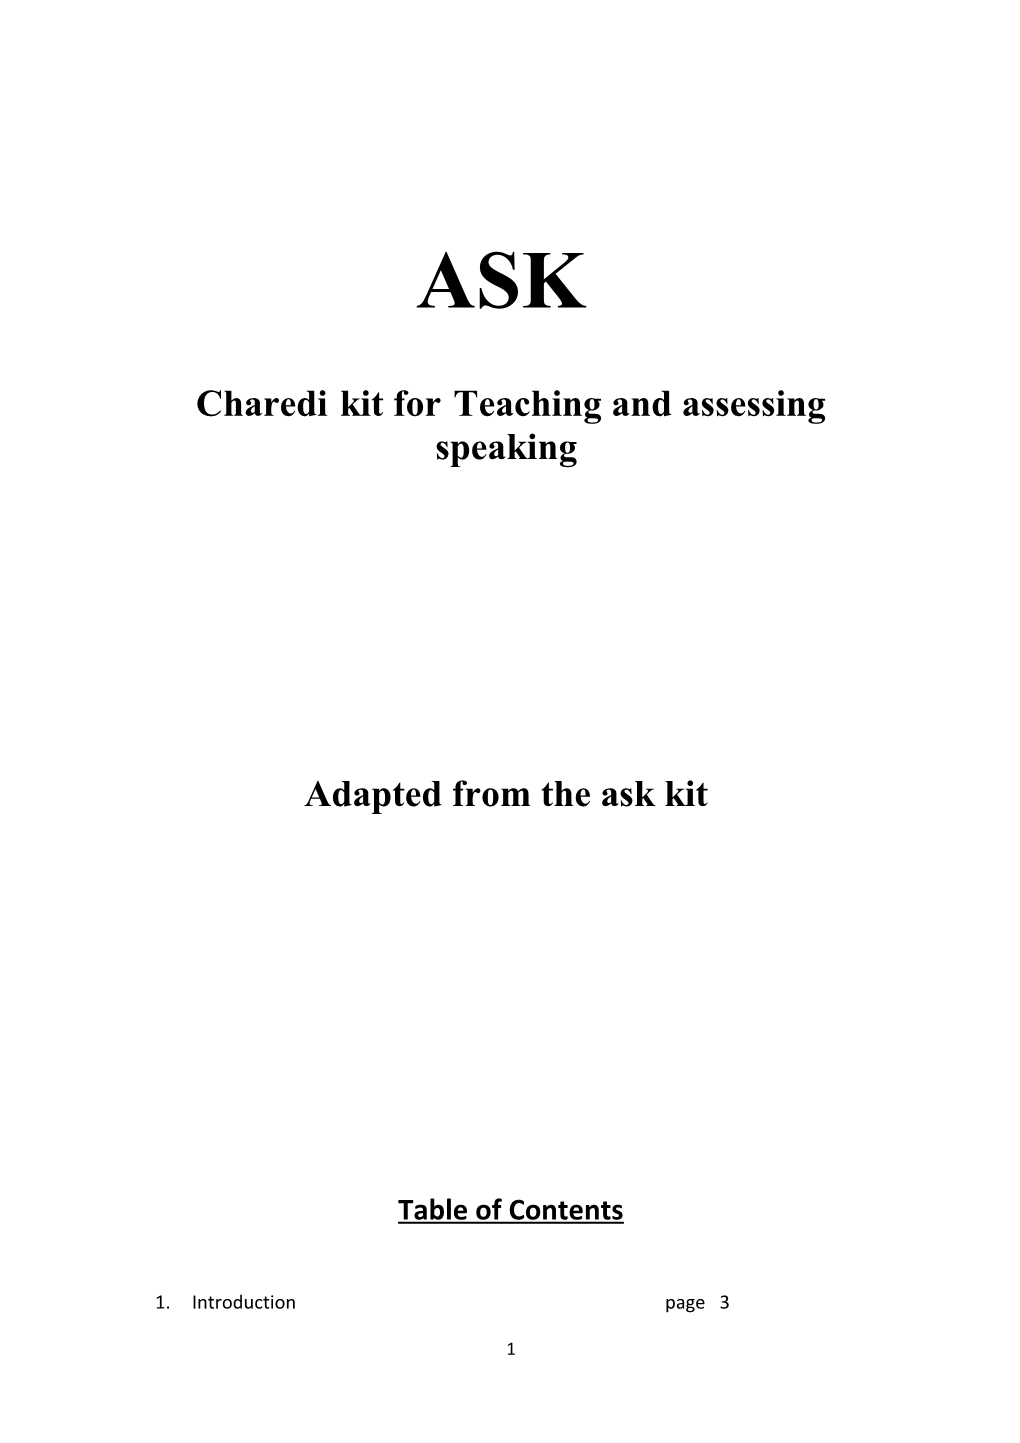 Charedi Kit for Teaching and Assessing Speaking